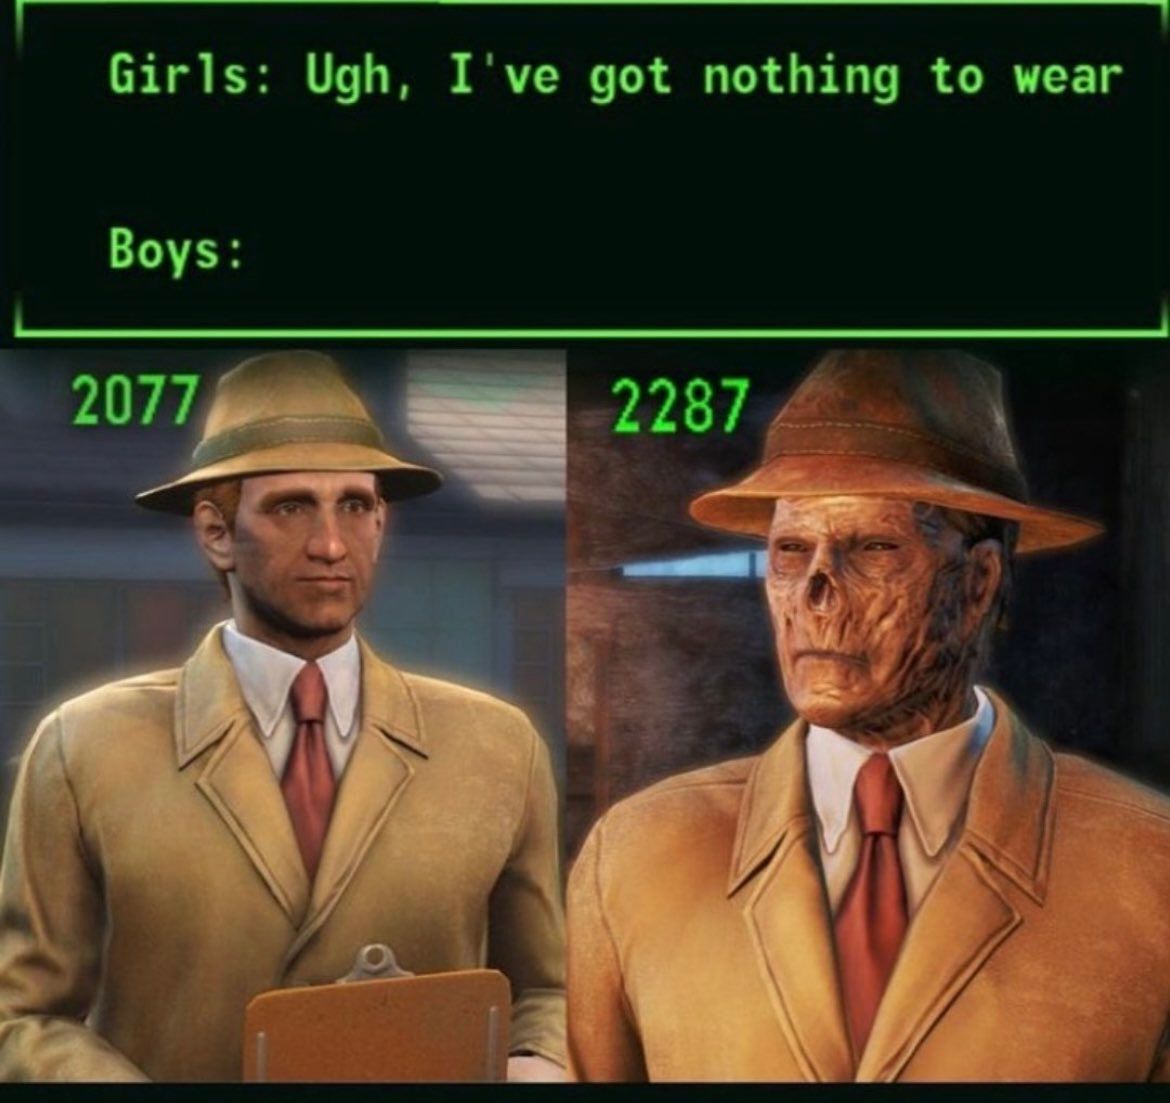 Girls: Ugh, I've got nothing to wear
Boys:
2077
2287